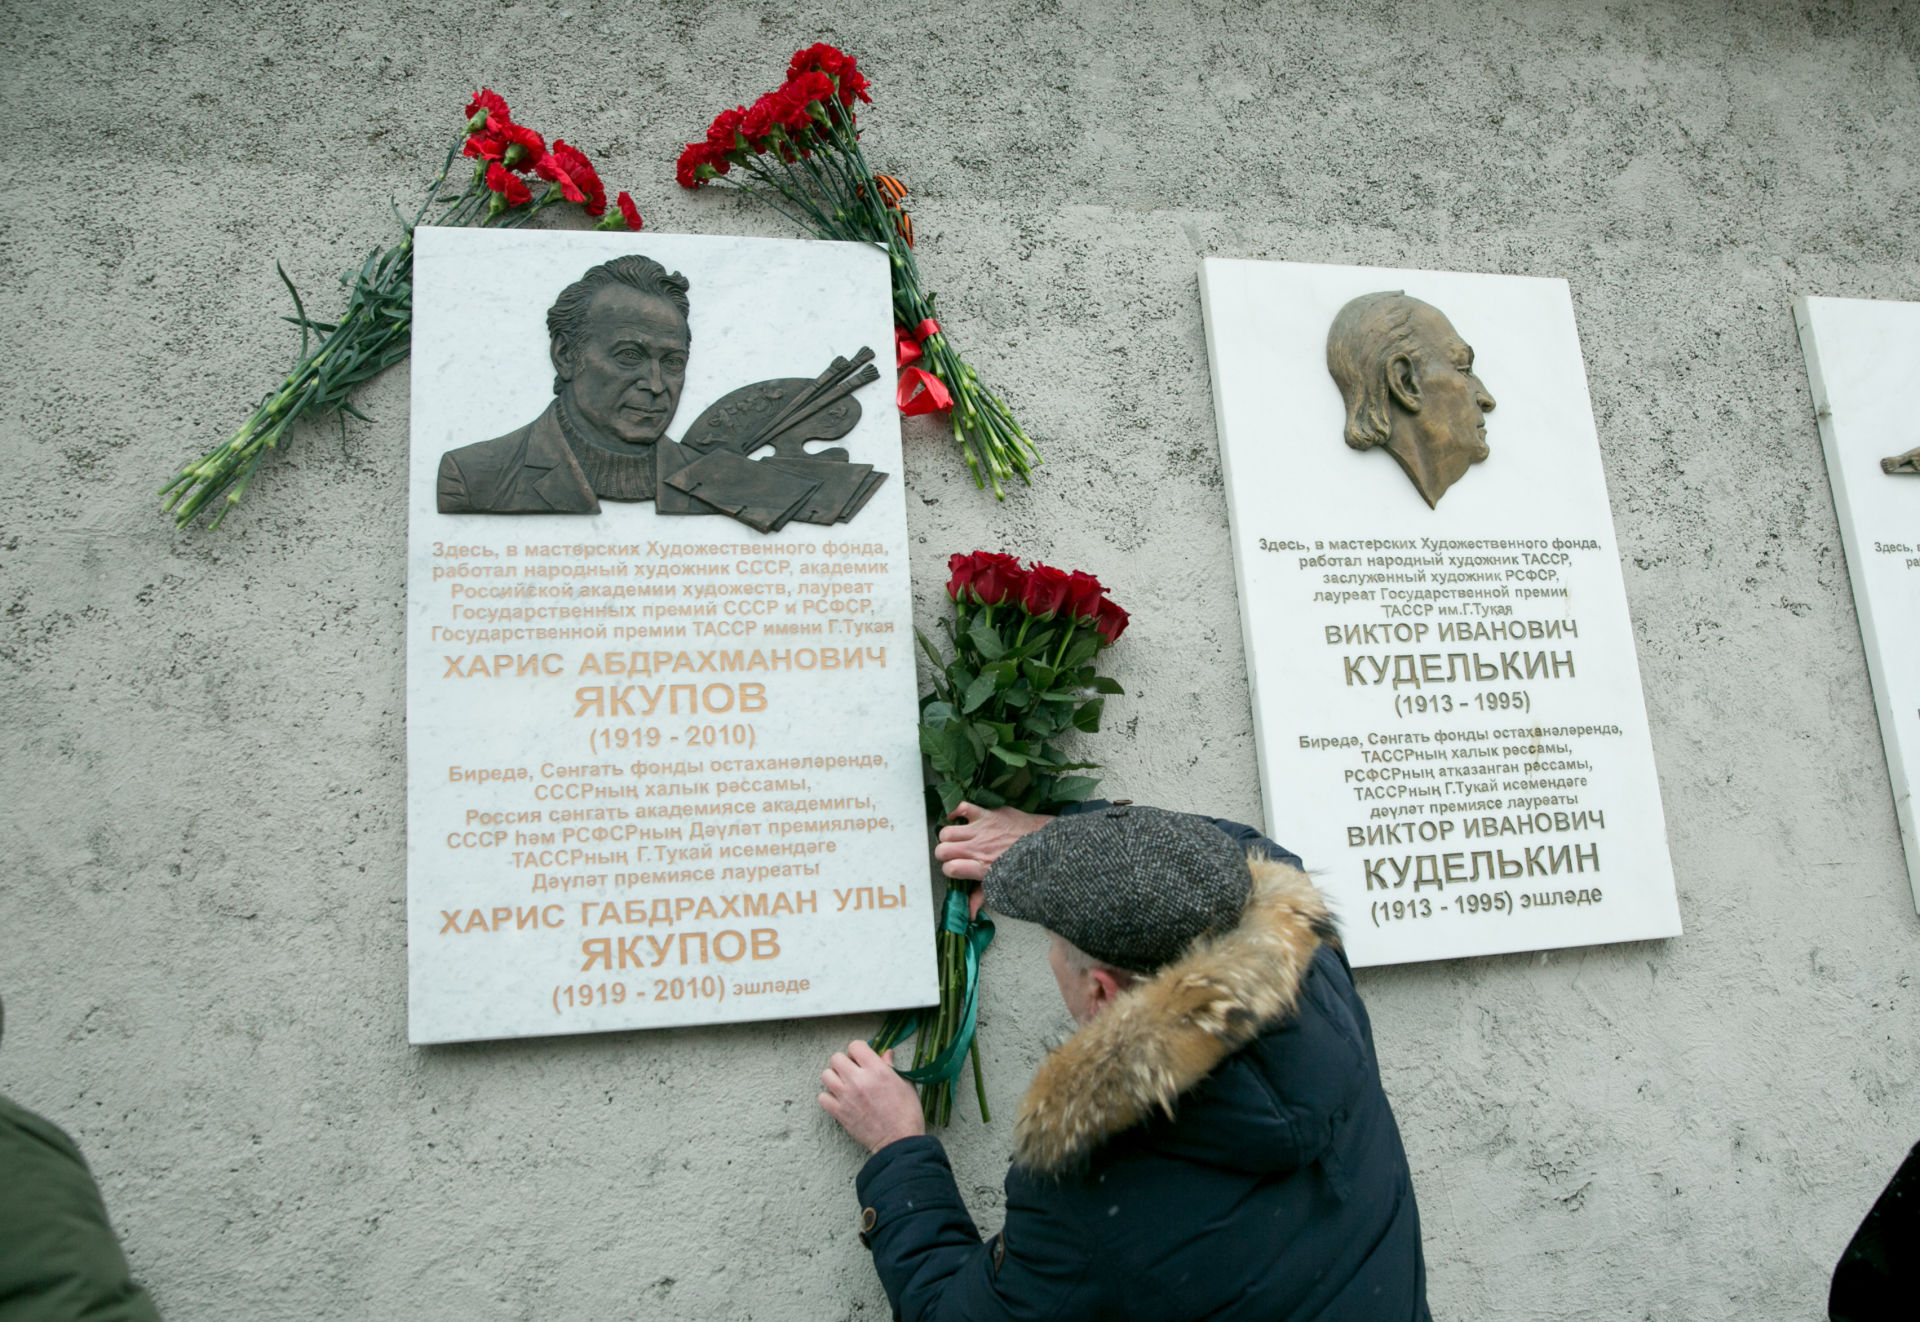 Дань великому художнику. Сегодня была открыта мемориальная доска  Харису Якупову.